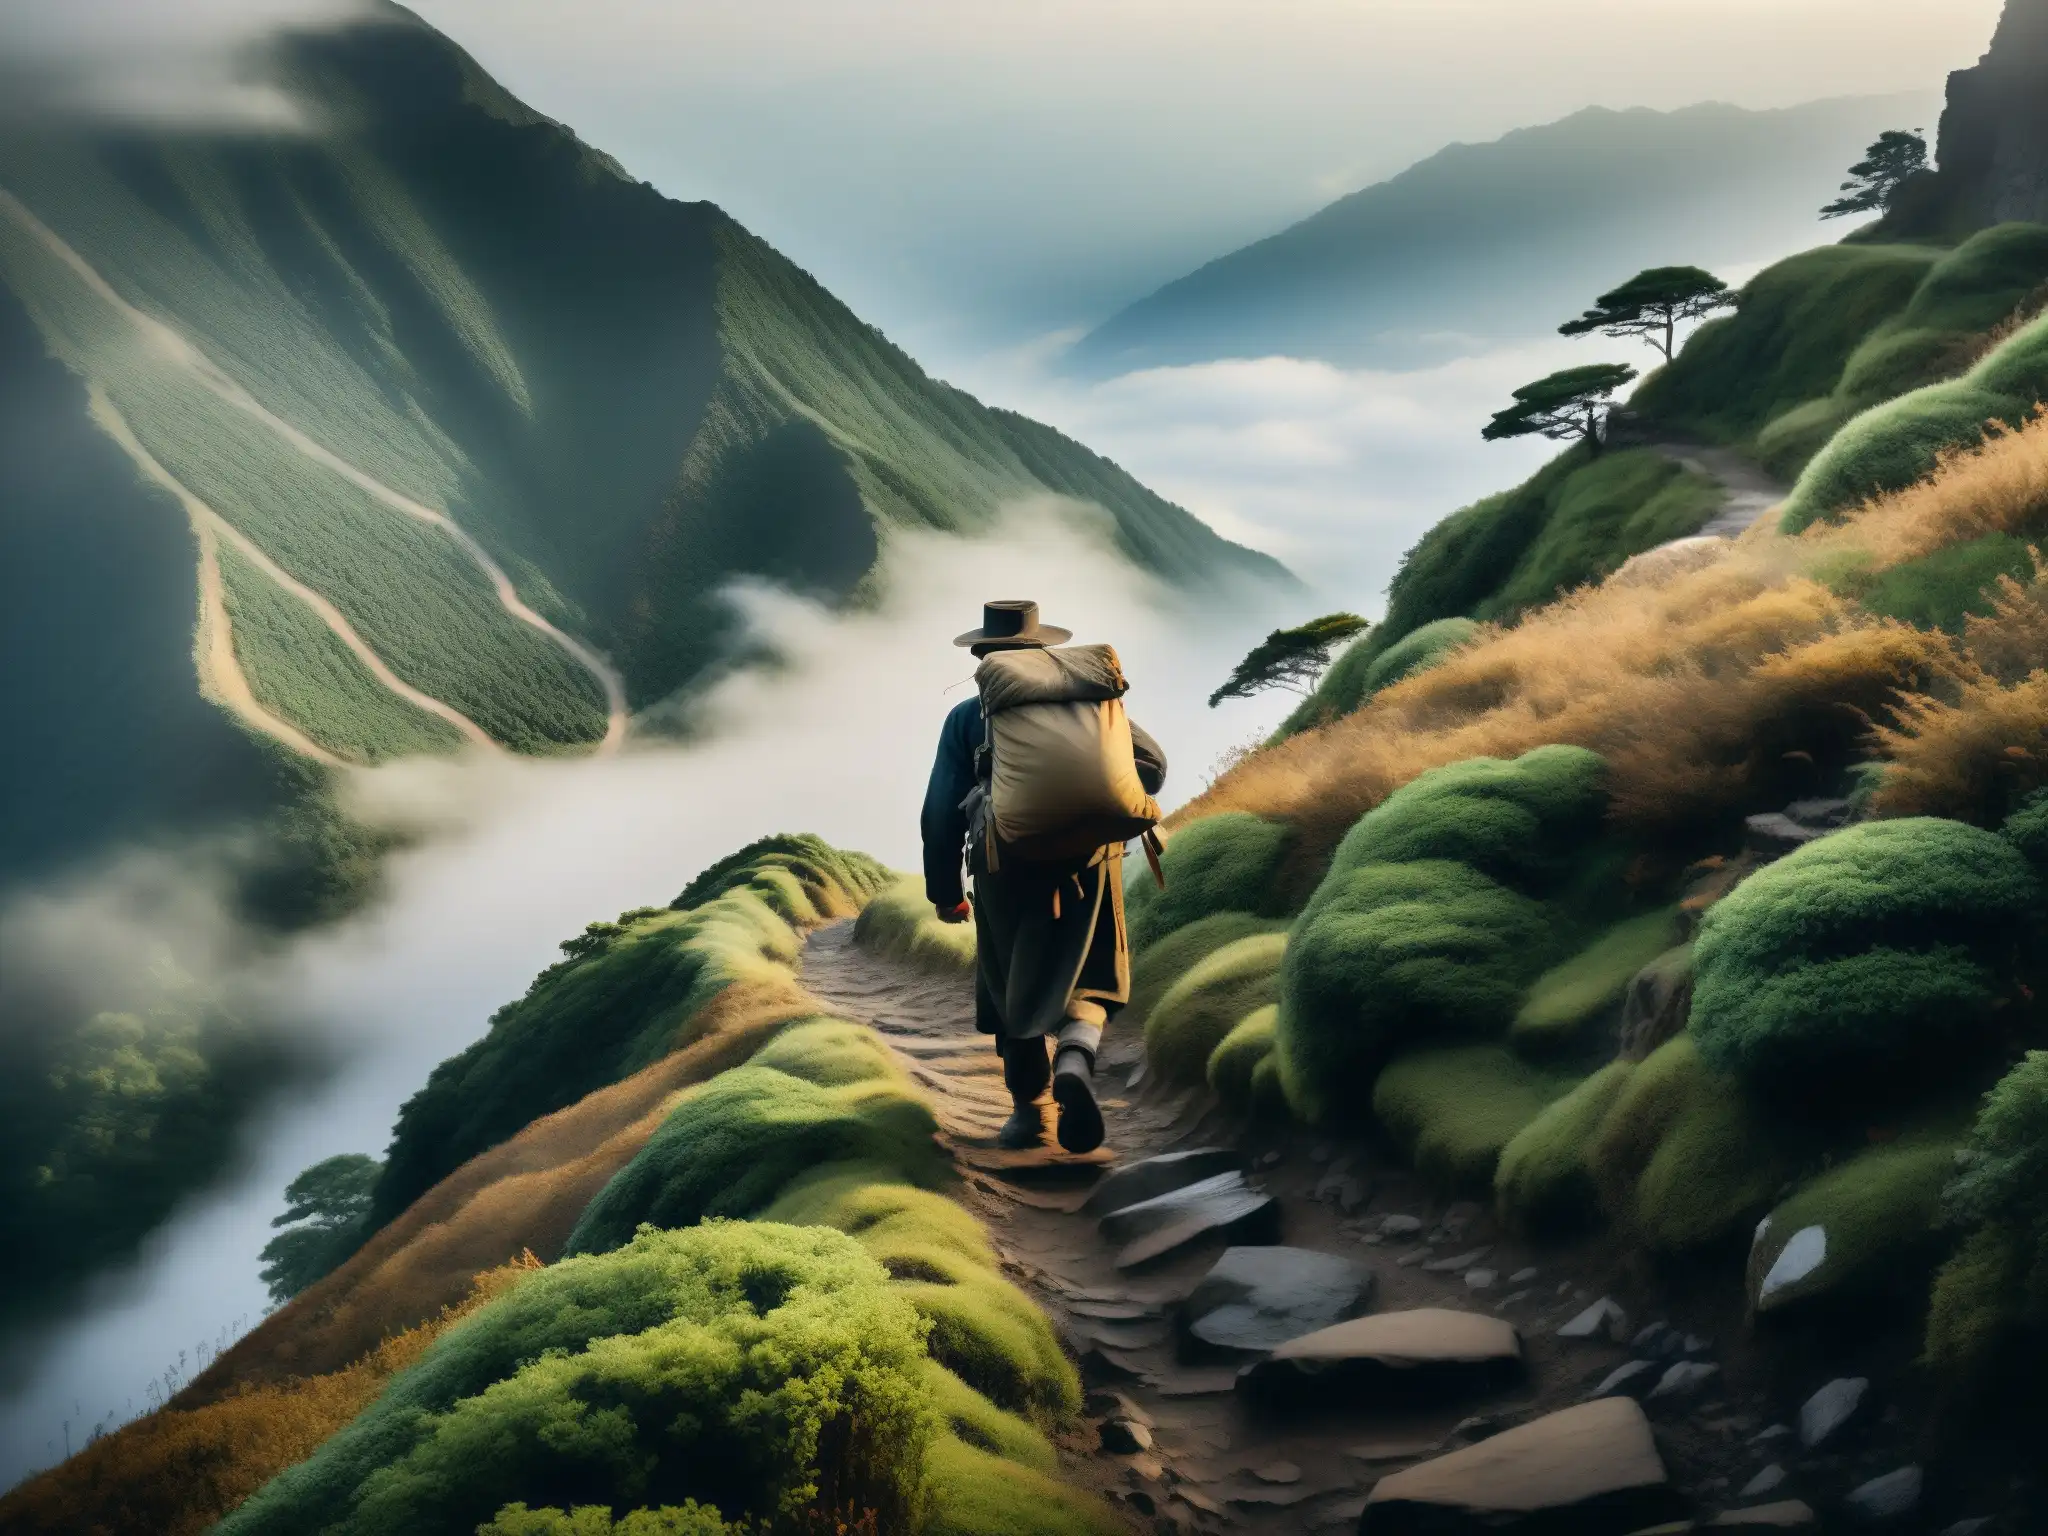 Un sendero montañoso envuelto en neblina, donde una figura solitaria avanza con un fardo, evocando el tema del Ubasuteyama: mito abandono ancianos